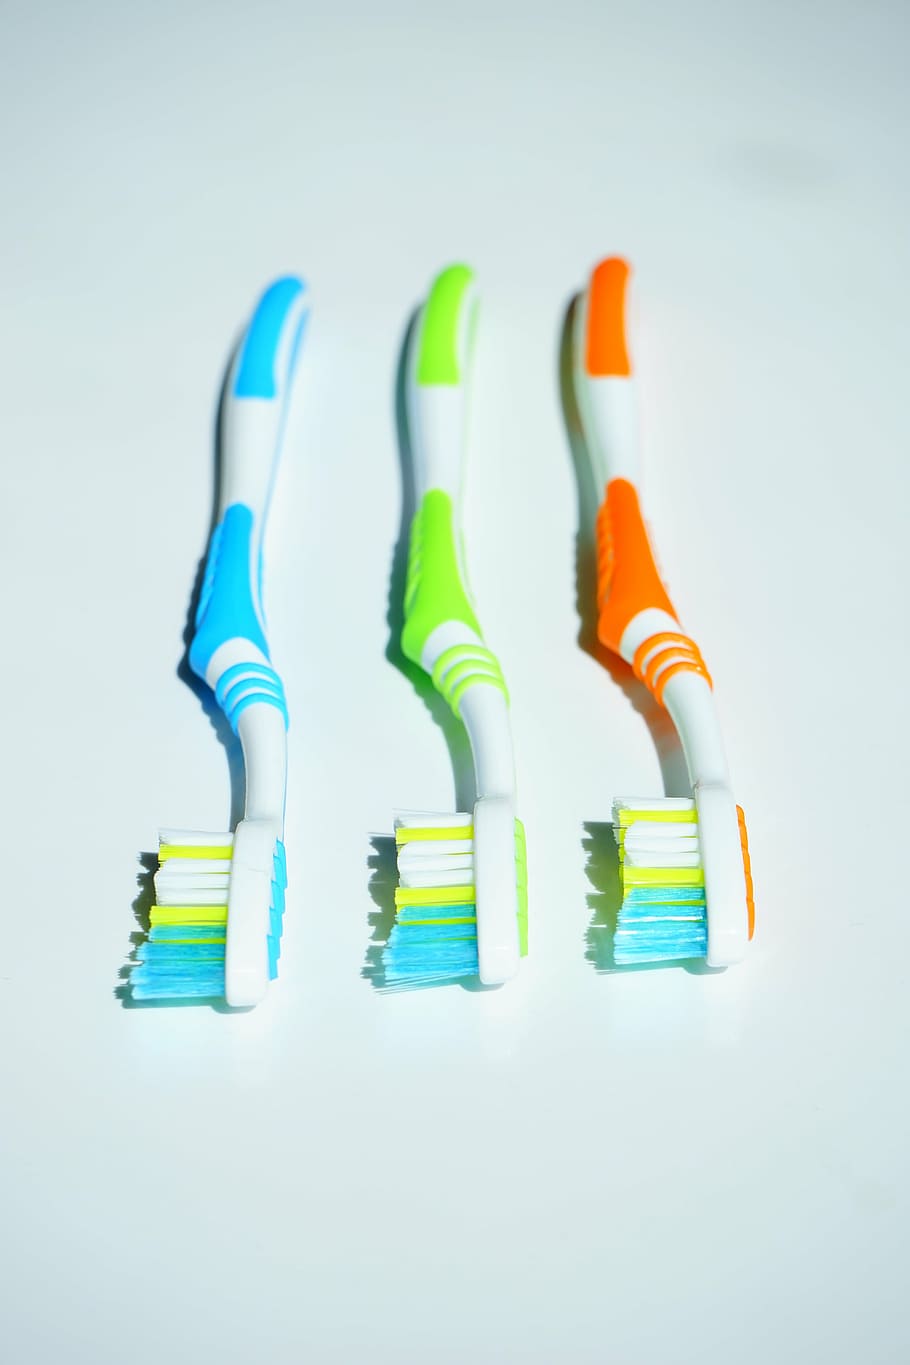 cepillos de dientes, higiene, limpieza, cuidado dental, higiene dental, cabeza del cepillo de dientes, bendiga, cabeza del cepillo, cuidado, cuidado del cuerpo